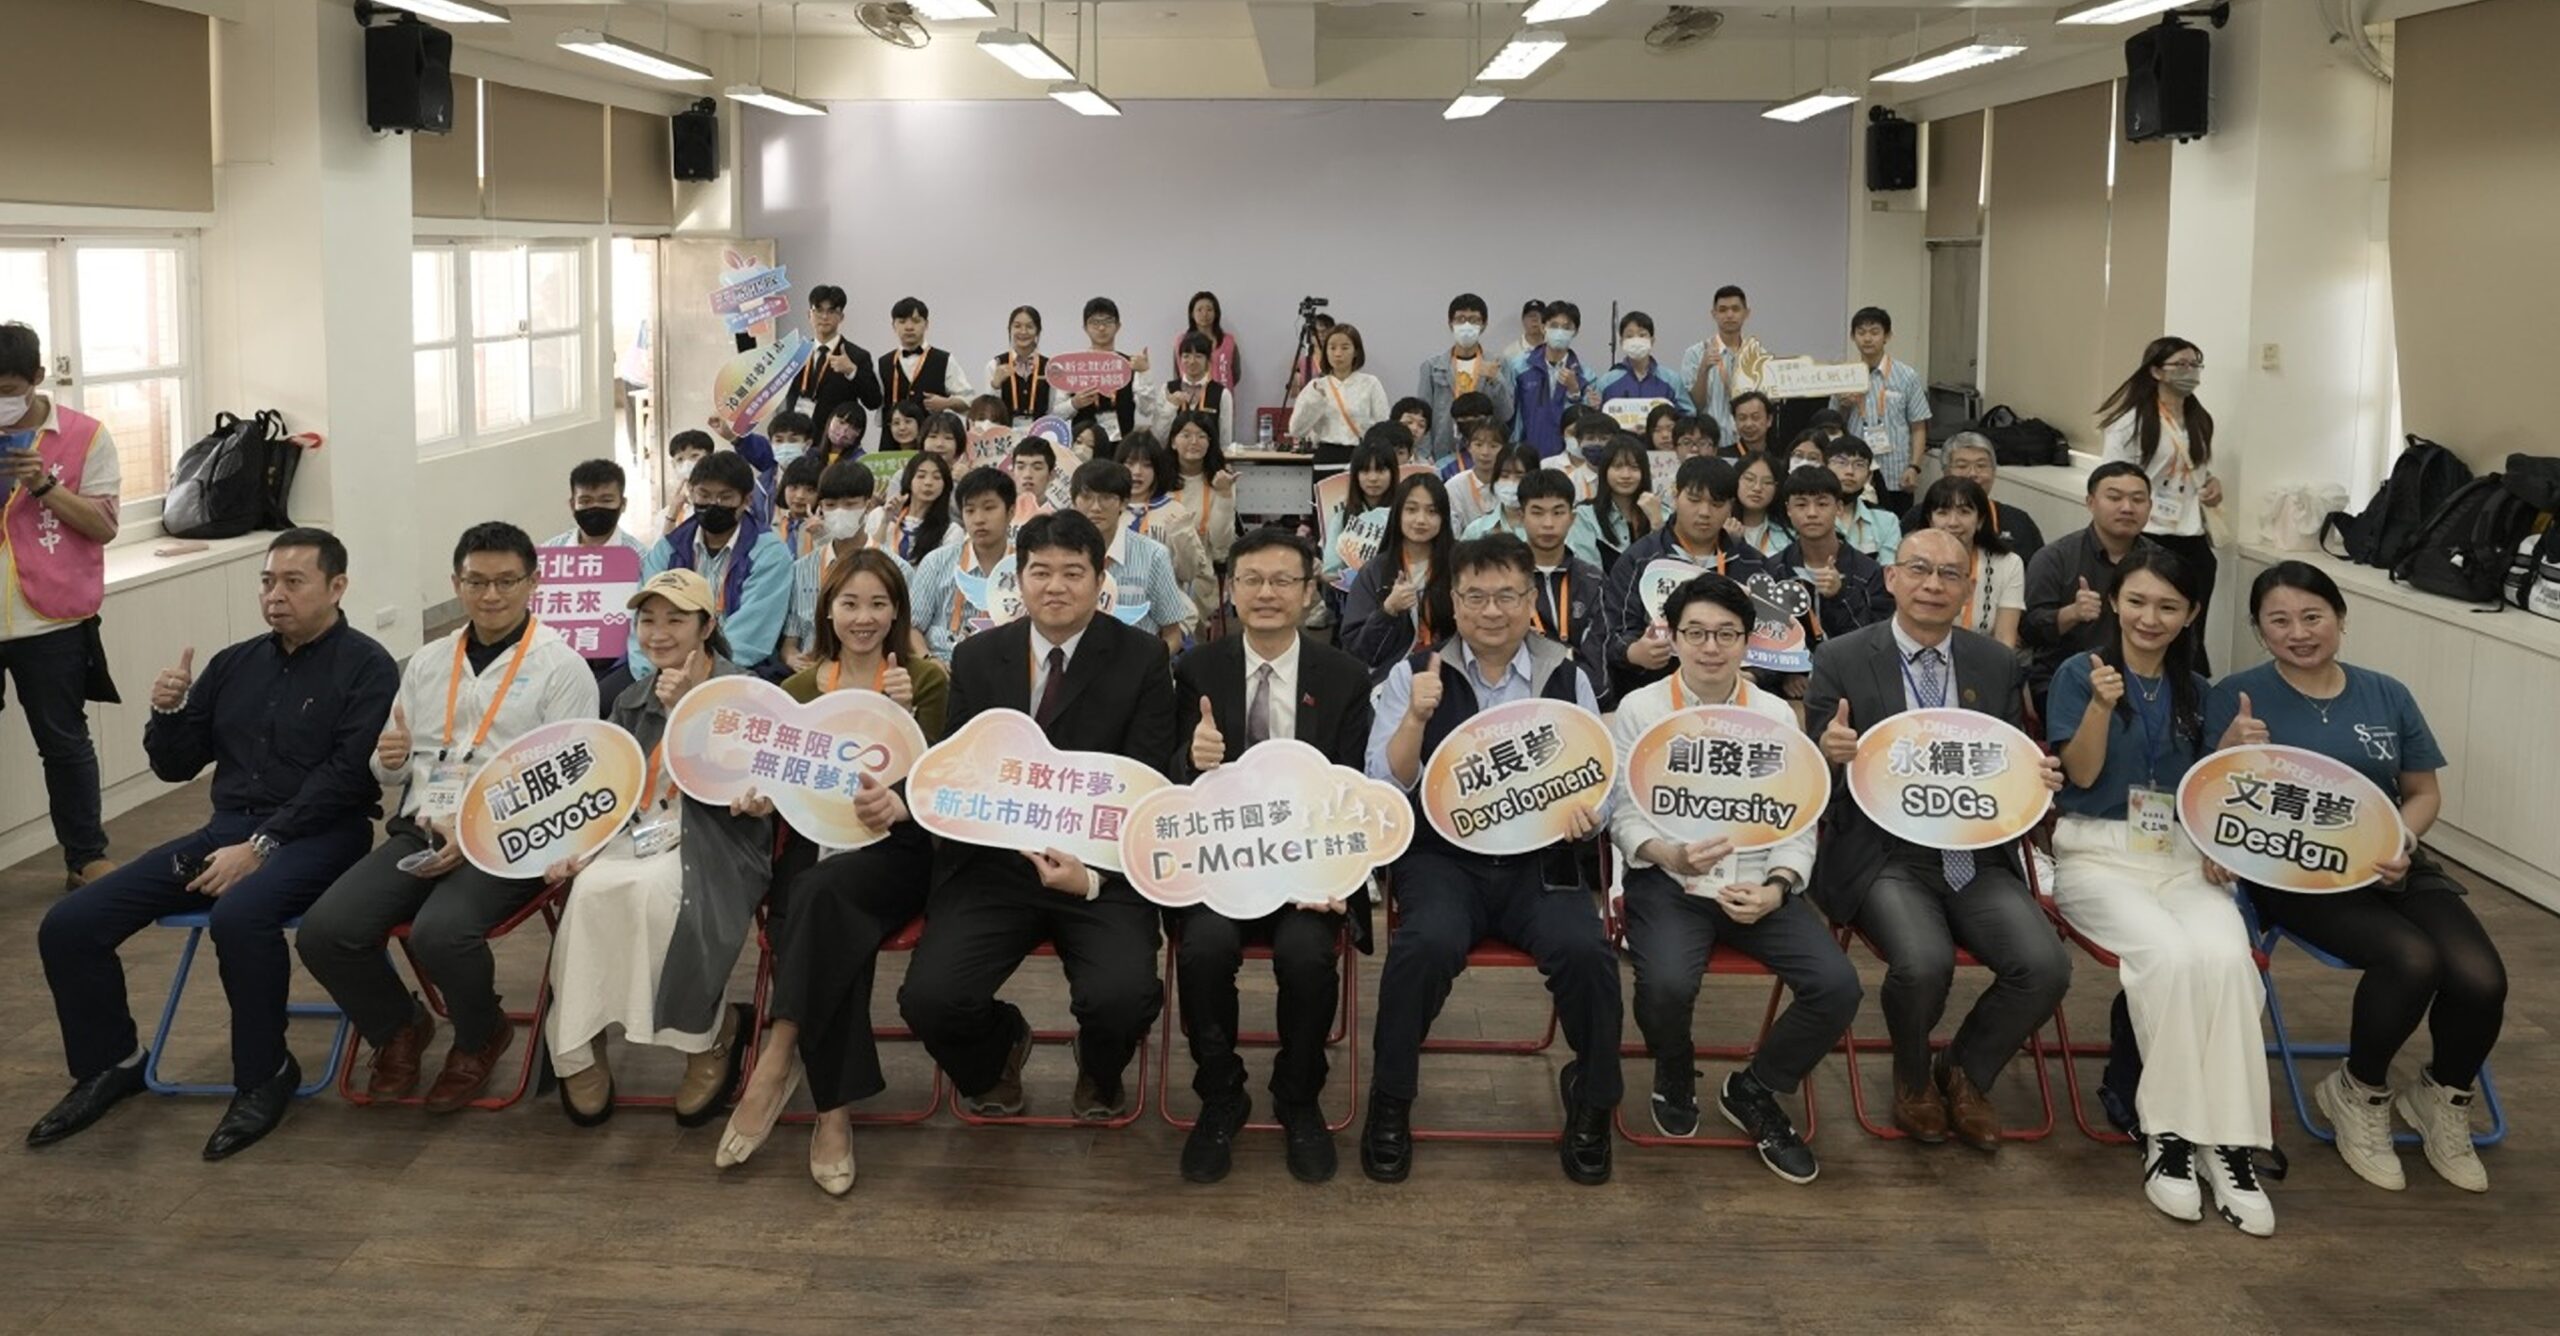 夢想點亮青春路 新北市首屆圓夢D-Maker計畫總獎金20萬元 - 早安台灣新聞 | Morning Taiwan News